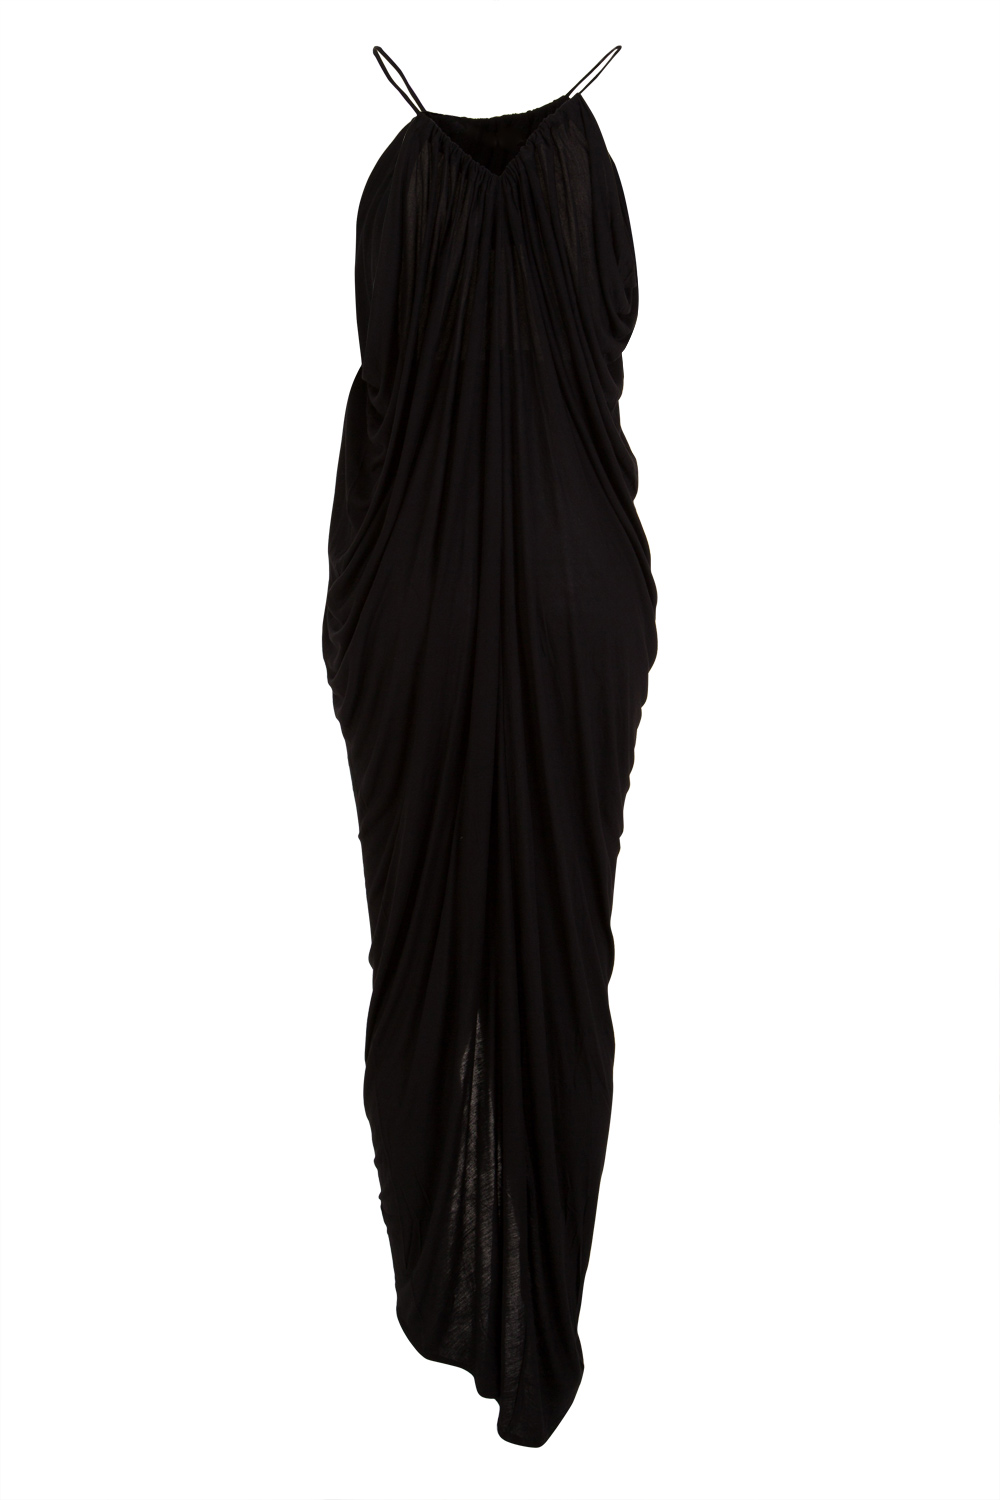 Brands Deshabille 44765 Goddess Dress Images - Birdsnest Clothing ...